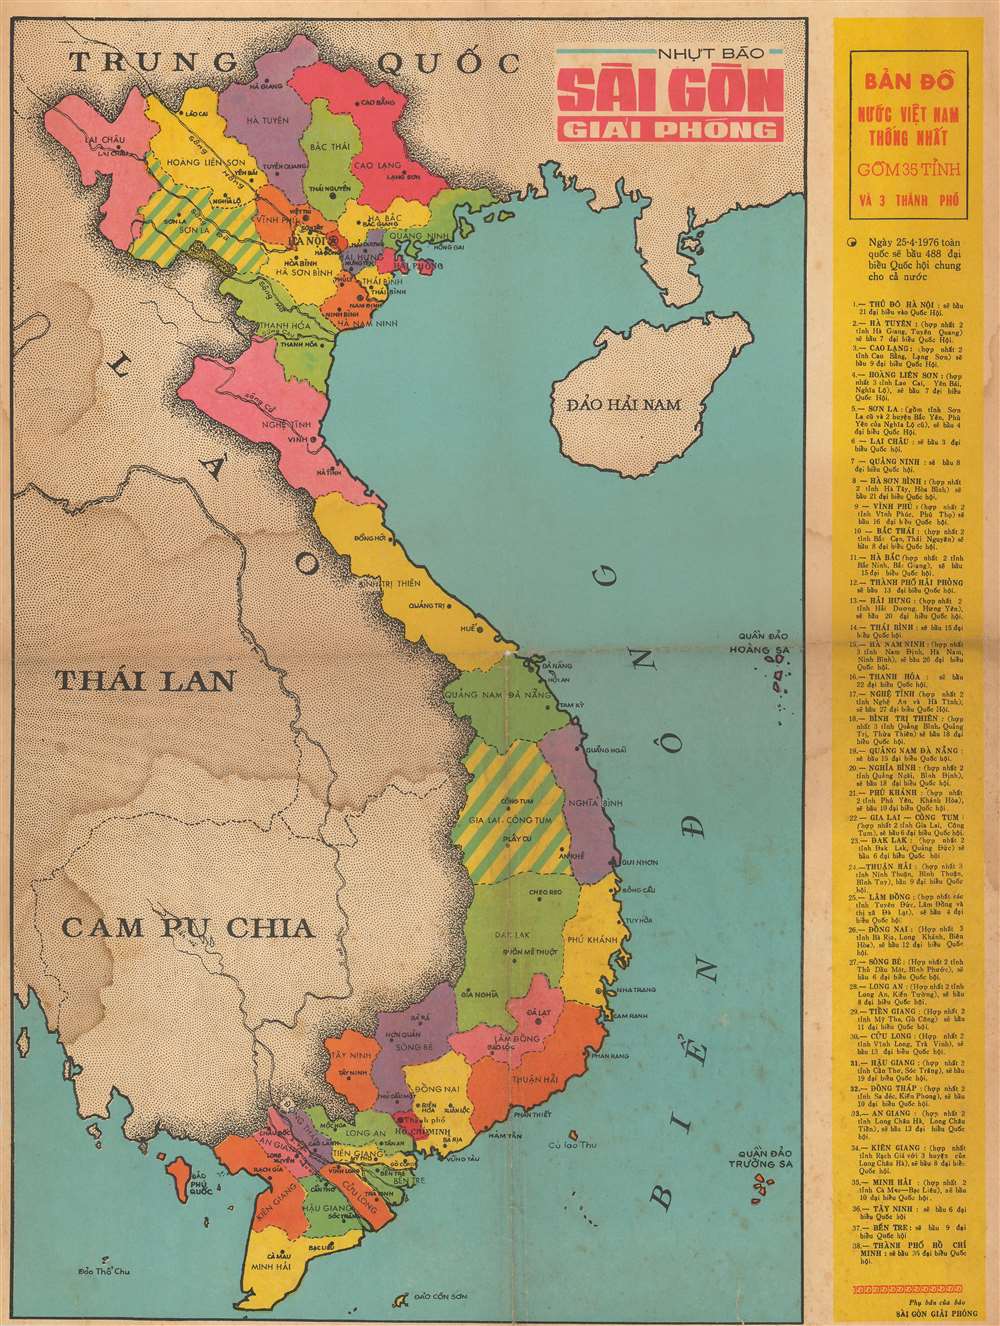 BẢN ĐỒ NUỐC VIỆT NAM THỐNG NHẤT GỒM 35 TỈNH VÀ 3 THÀNH PHỐ. / Vietnamese United Nations Map Included 35 Provinces and 3 Cities. - Main View